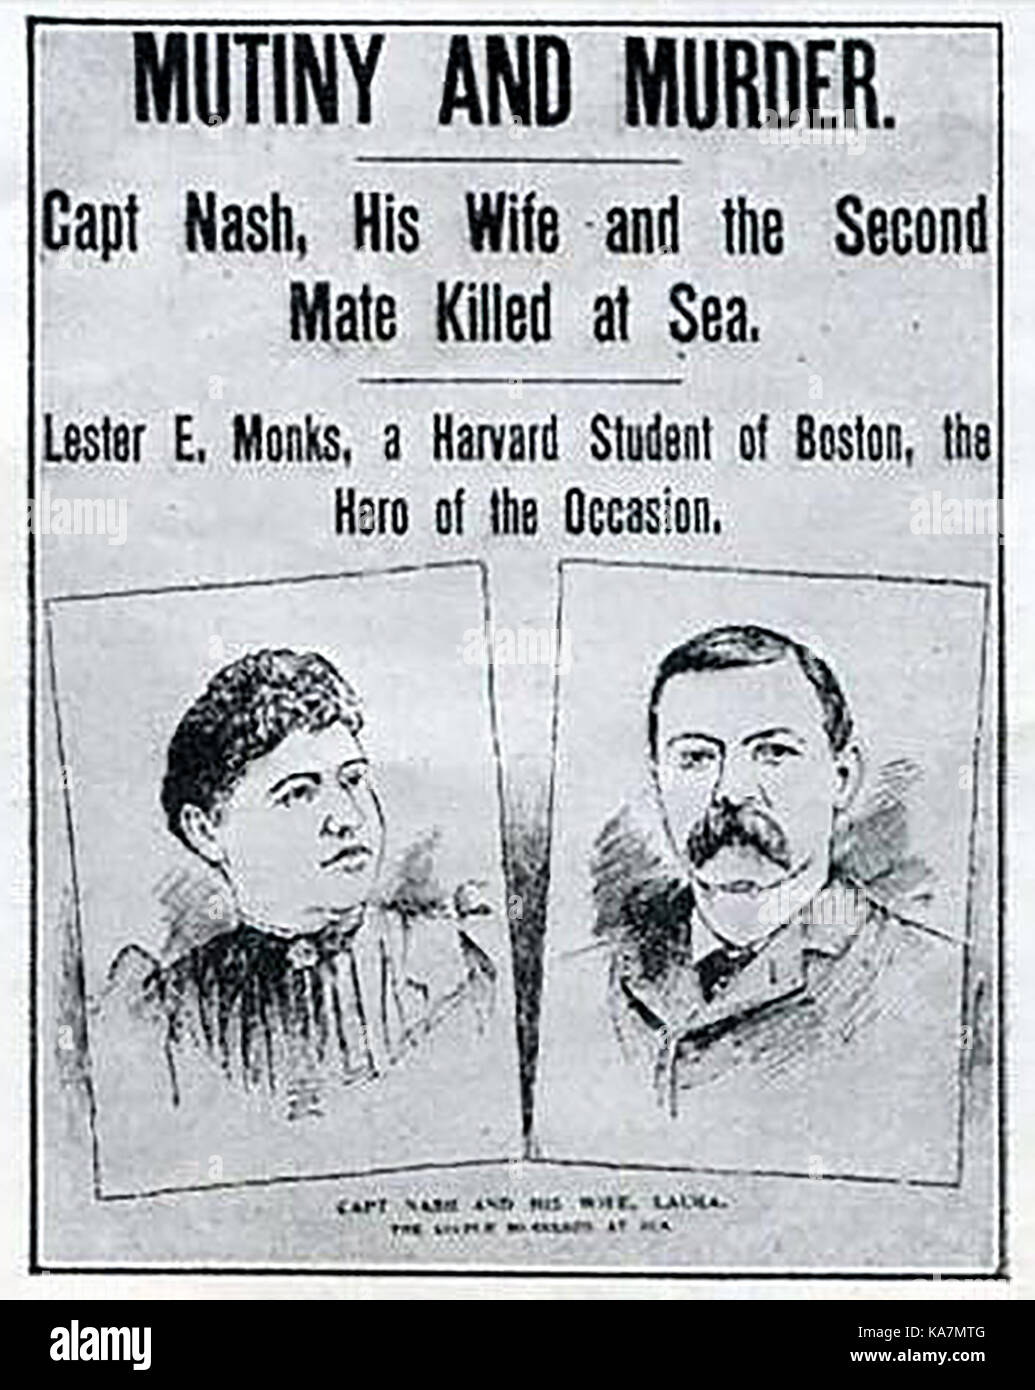 1896 - eine Geschichte von der Vorderseite des Boston Globe (USA) Zeitung für den 22. Juli 1896 in Bezug auf die Meuterei und Ermordung von Kapitän I. Nash, seine Frau und das Schiff mate auf See an Bord der 'Herbert Fuller' - Portrait von Kapitän und Frau Nash Stockfoto